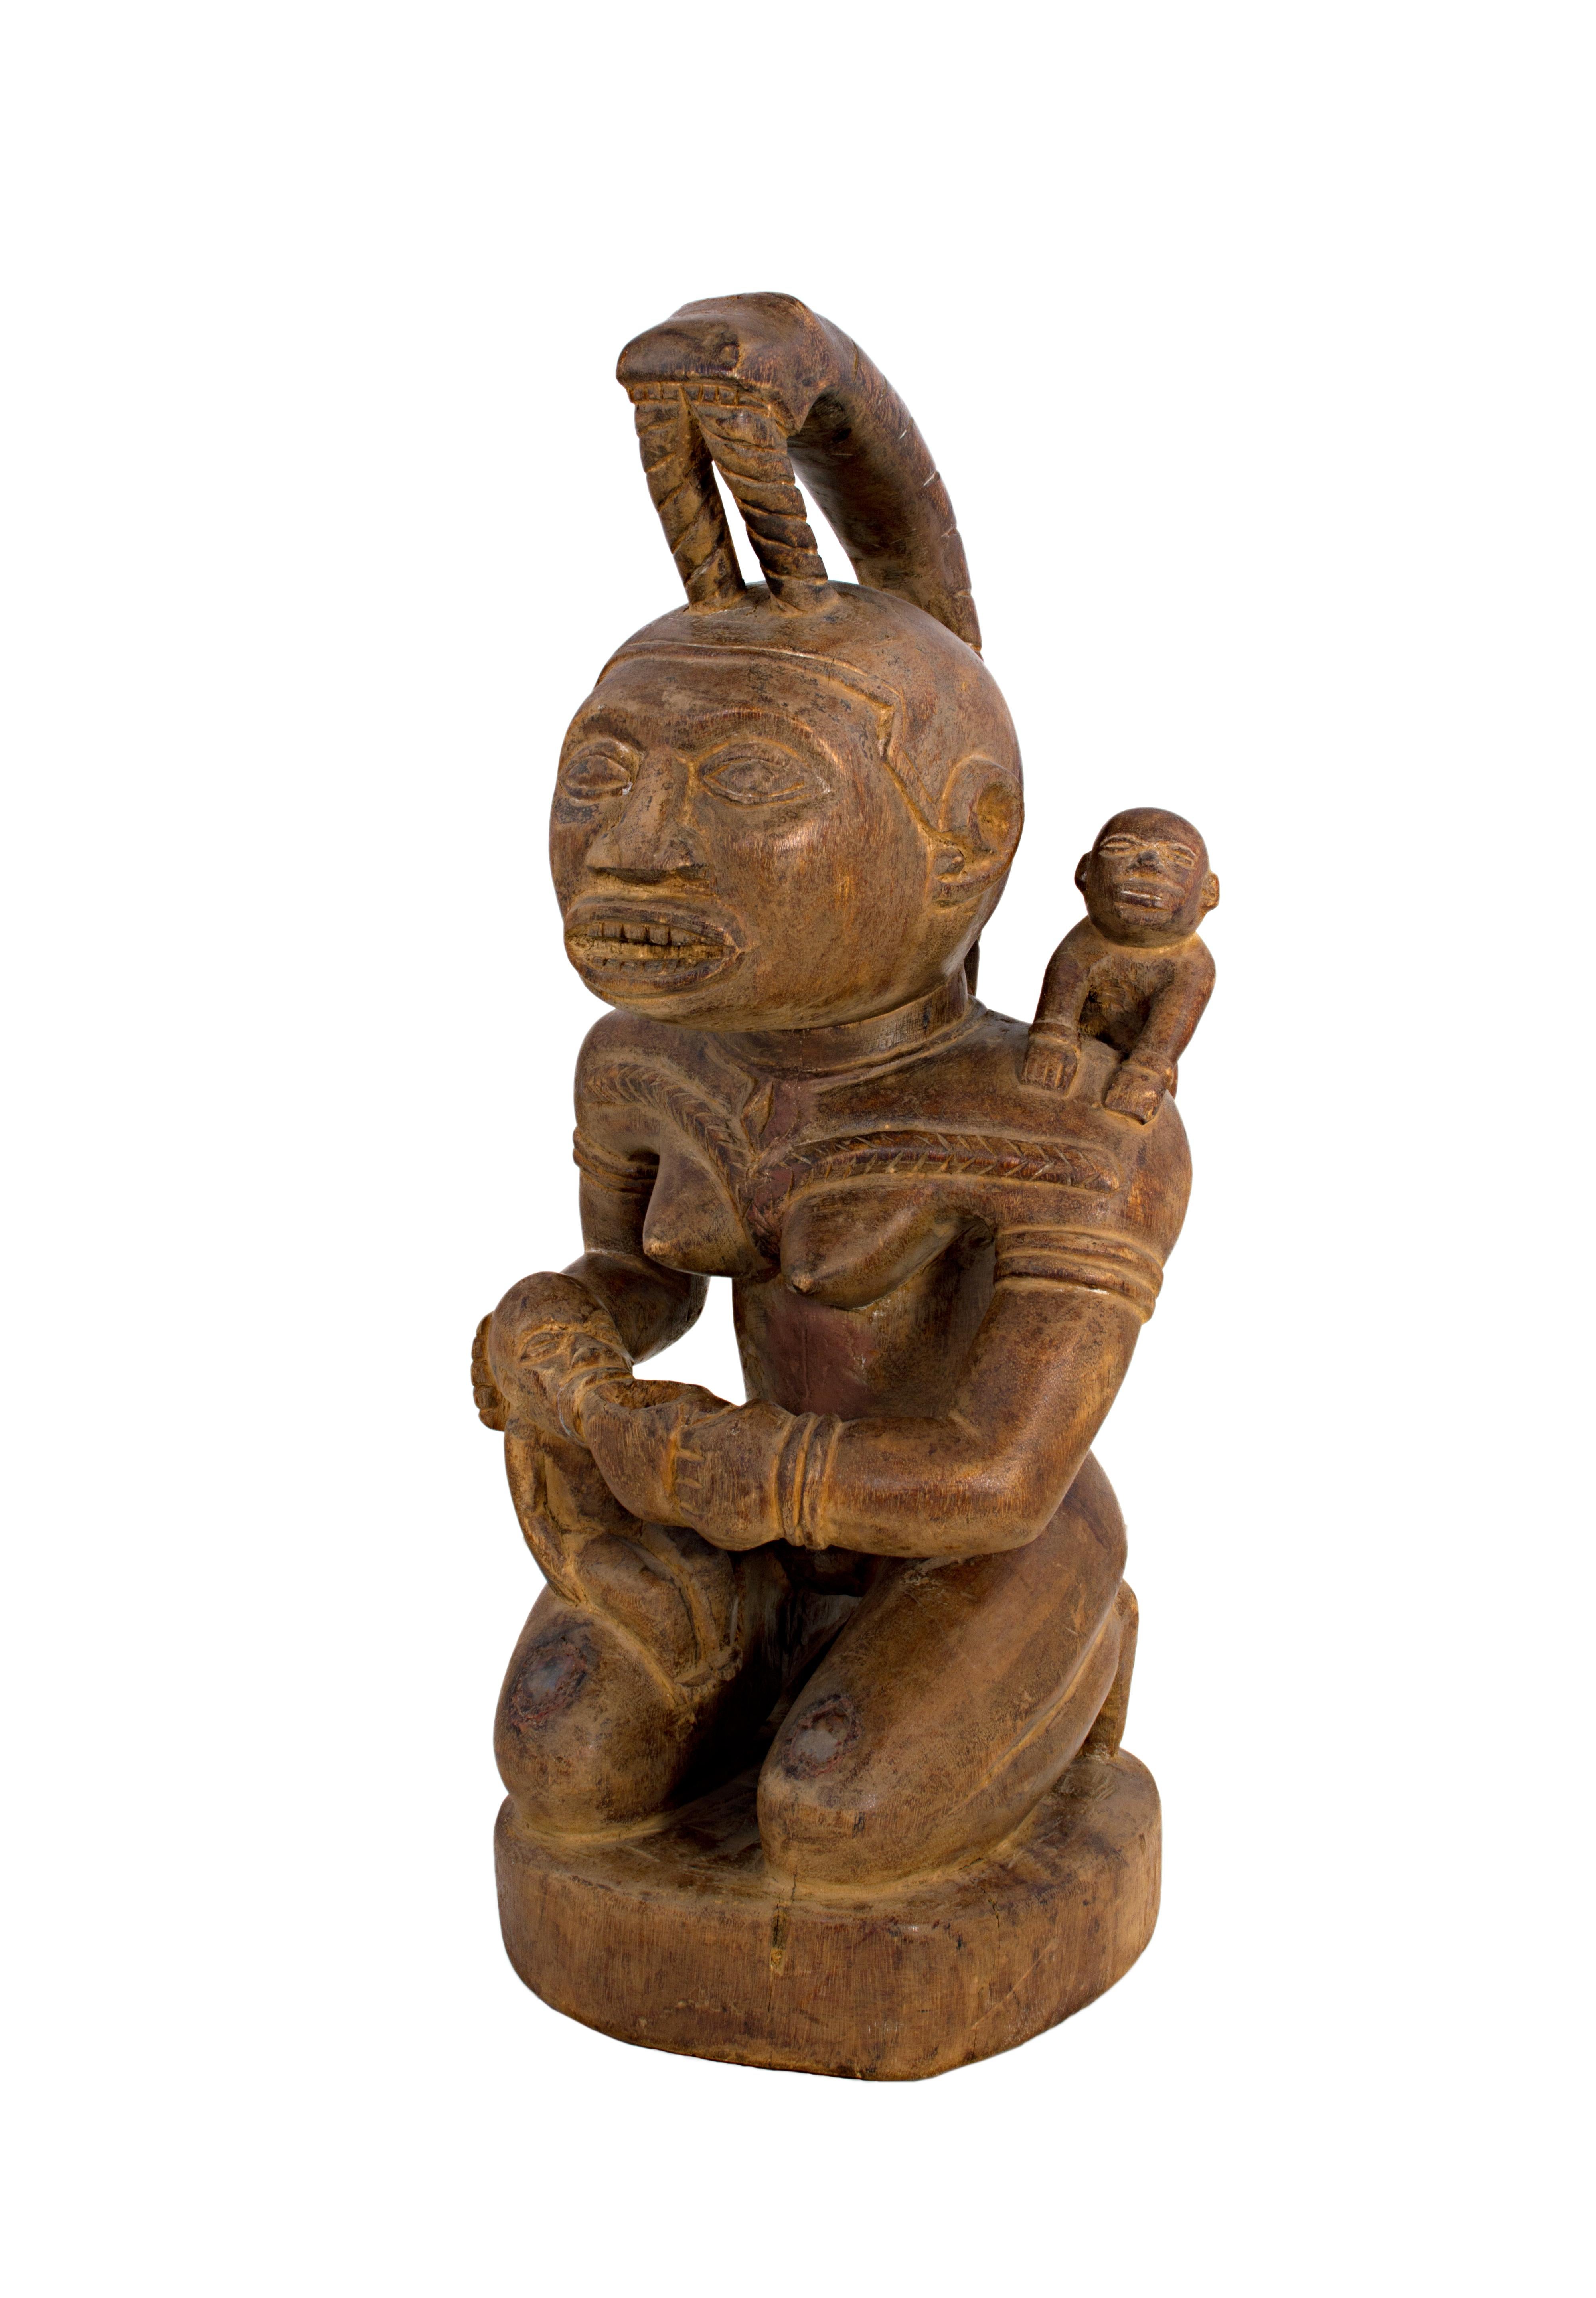 « Maternity-Bacongo, Zaire », créée en République démocratique du Congo vers 1940